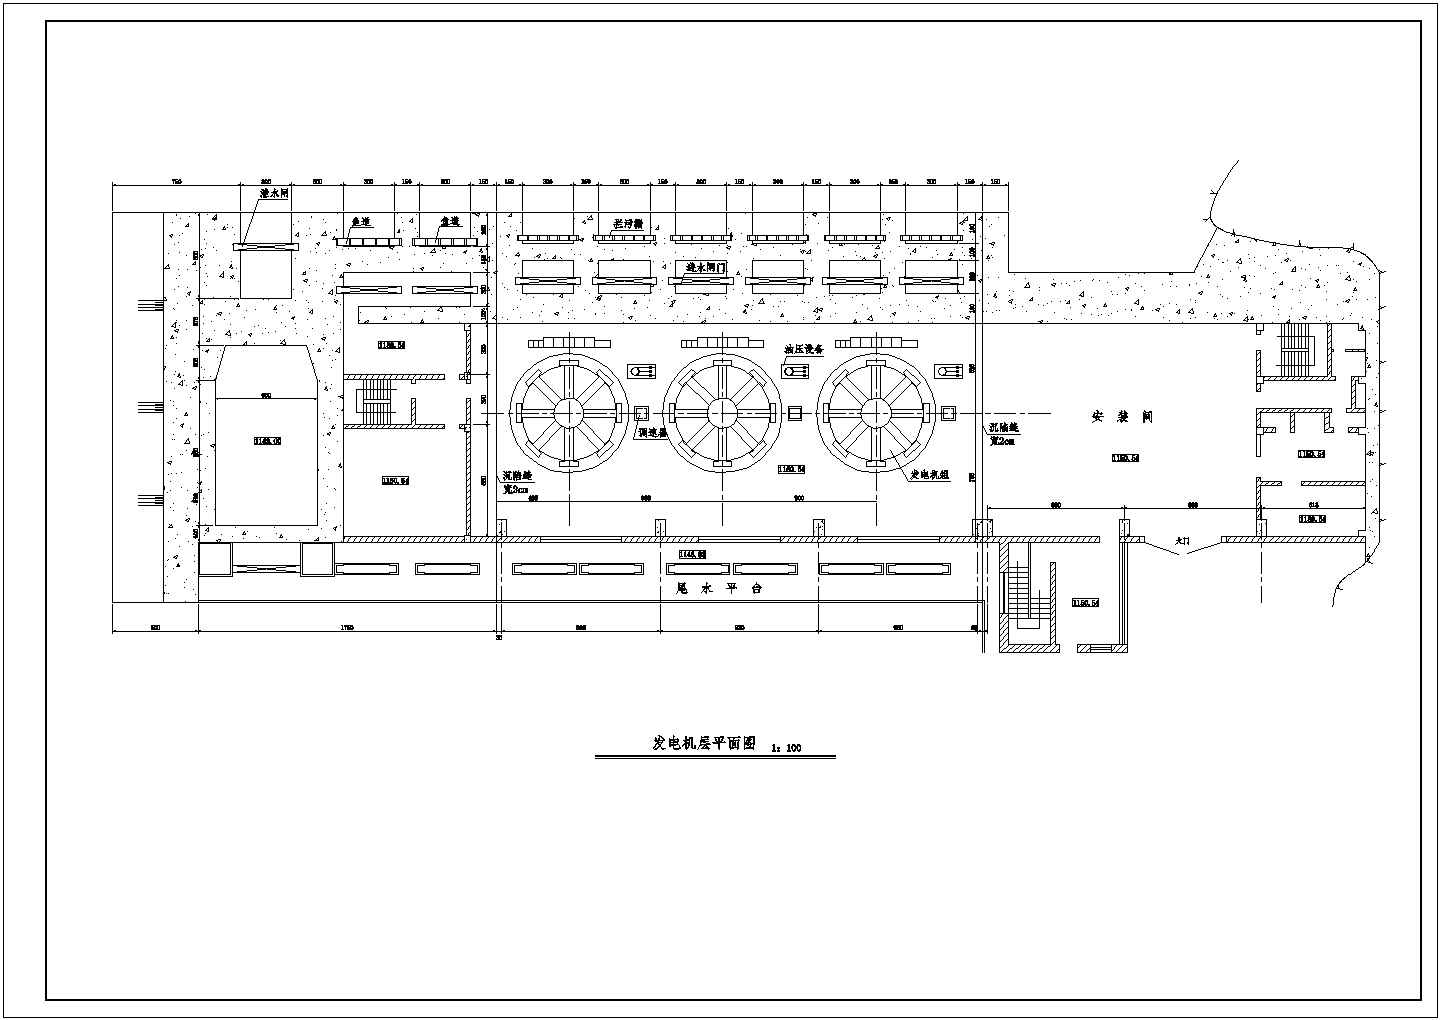 装机容量3x4000kW某水电站厂房结构布置图